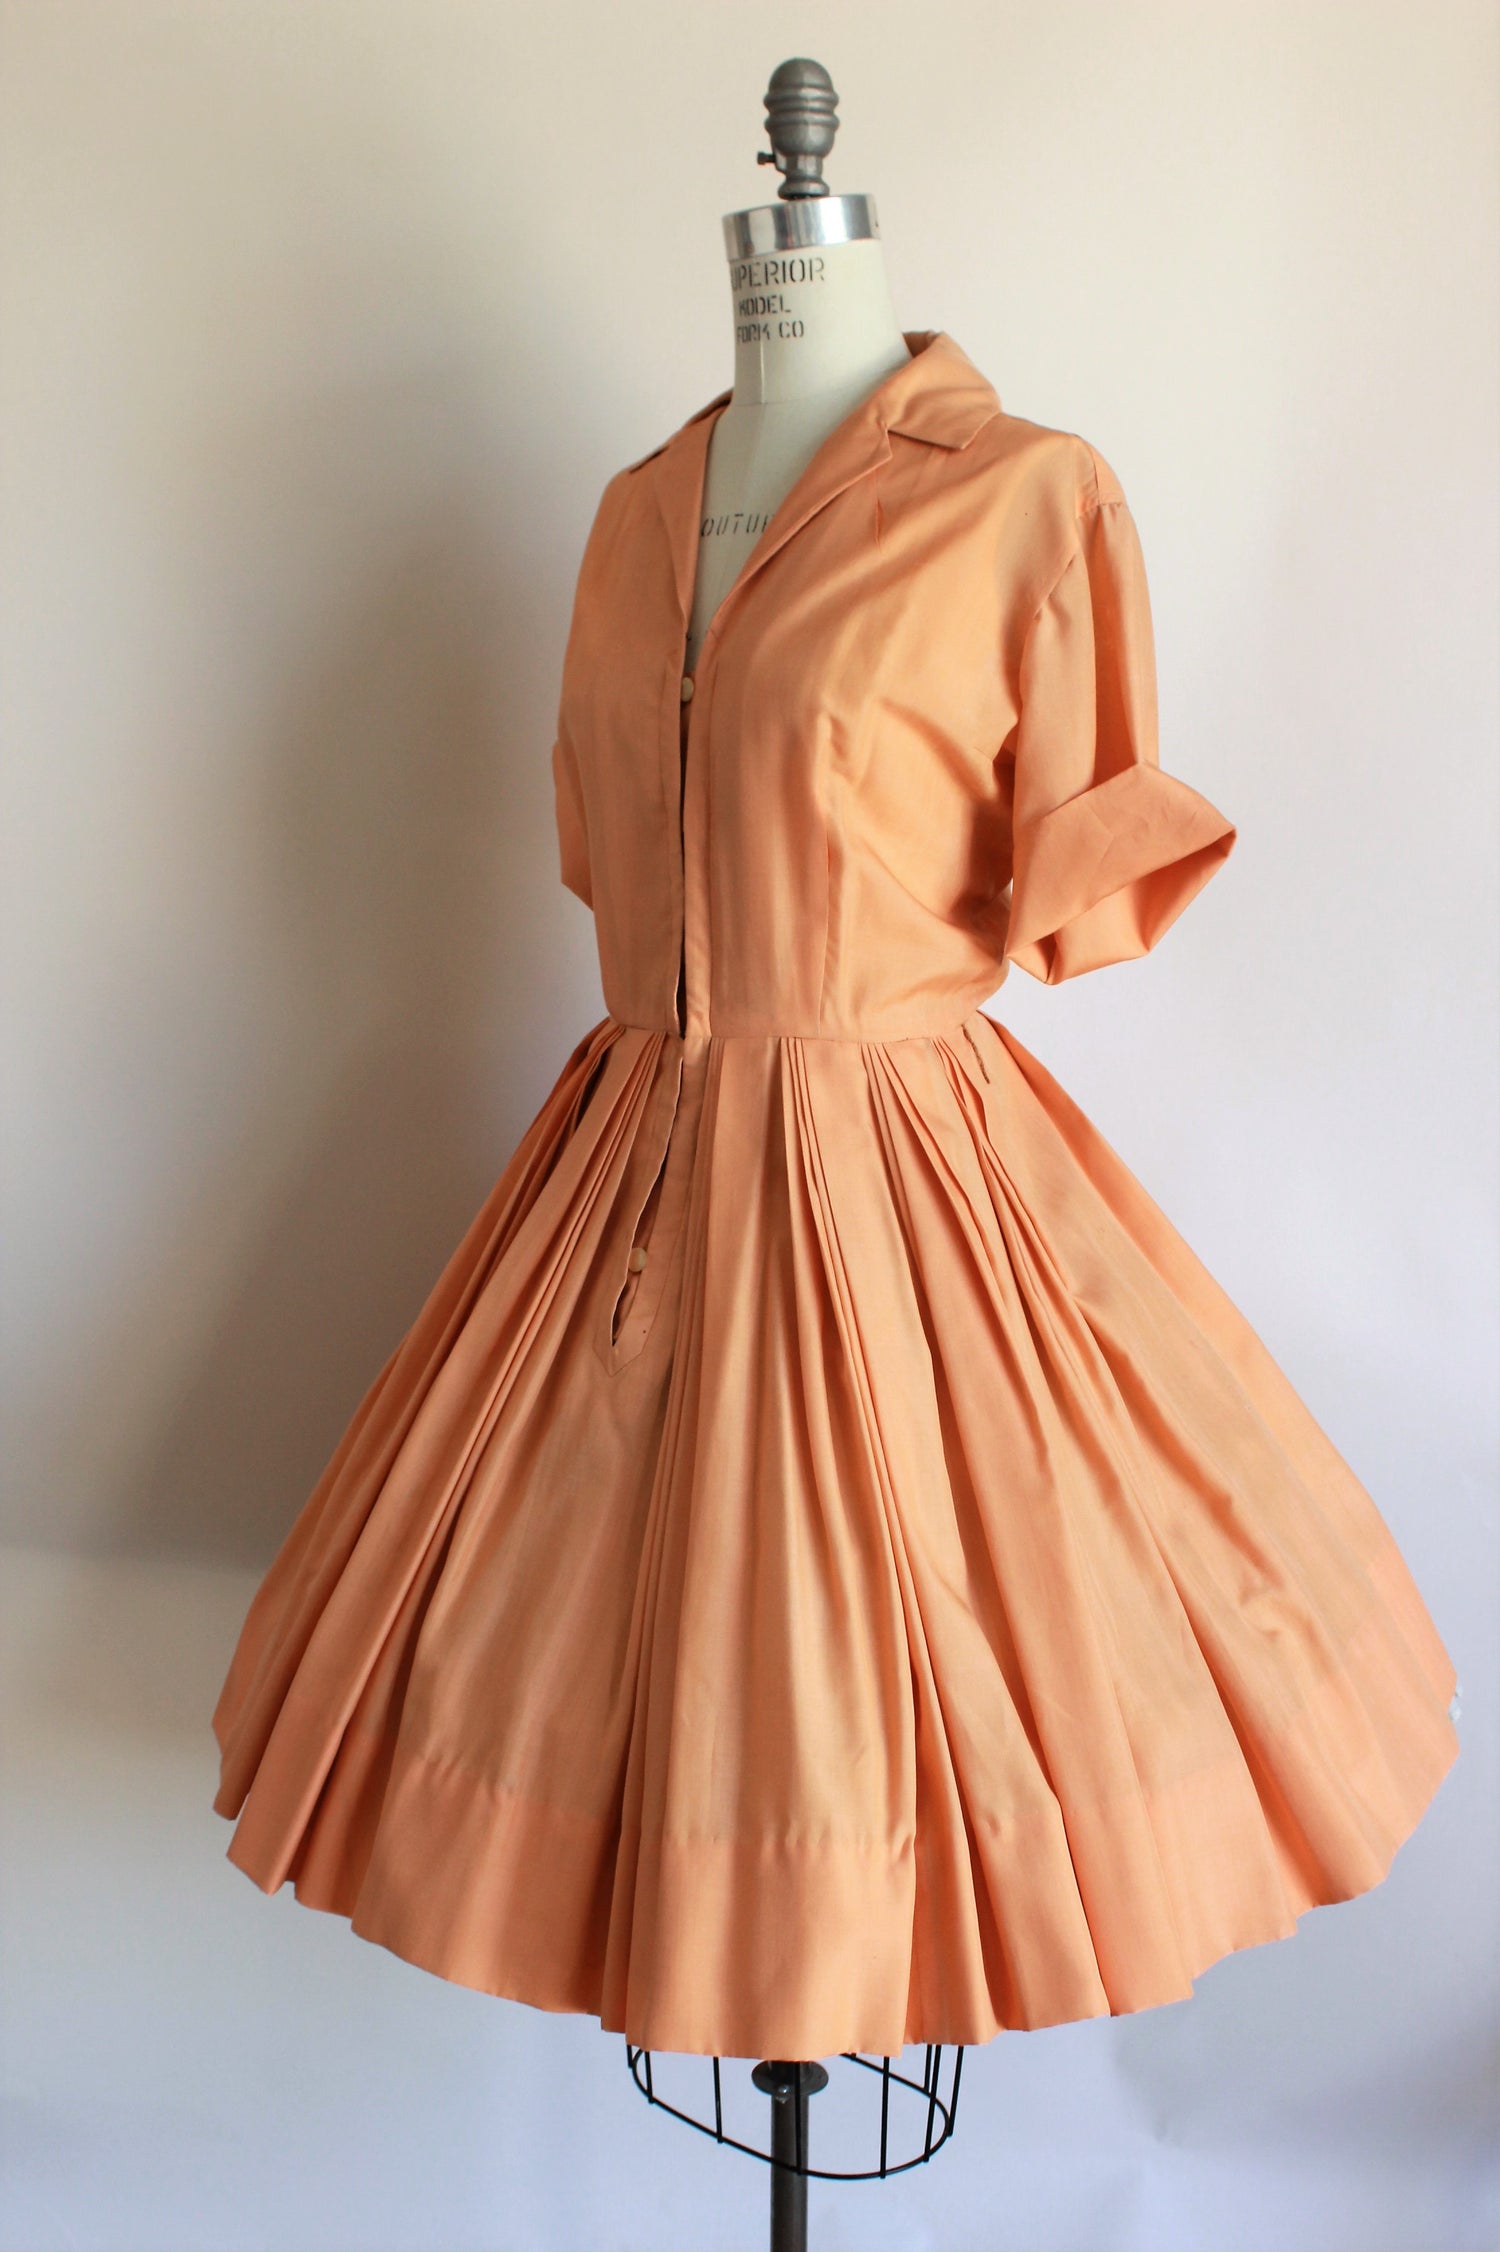 Vintage 1960s Orange Shirtwaist Dress by I Magnin